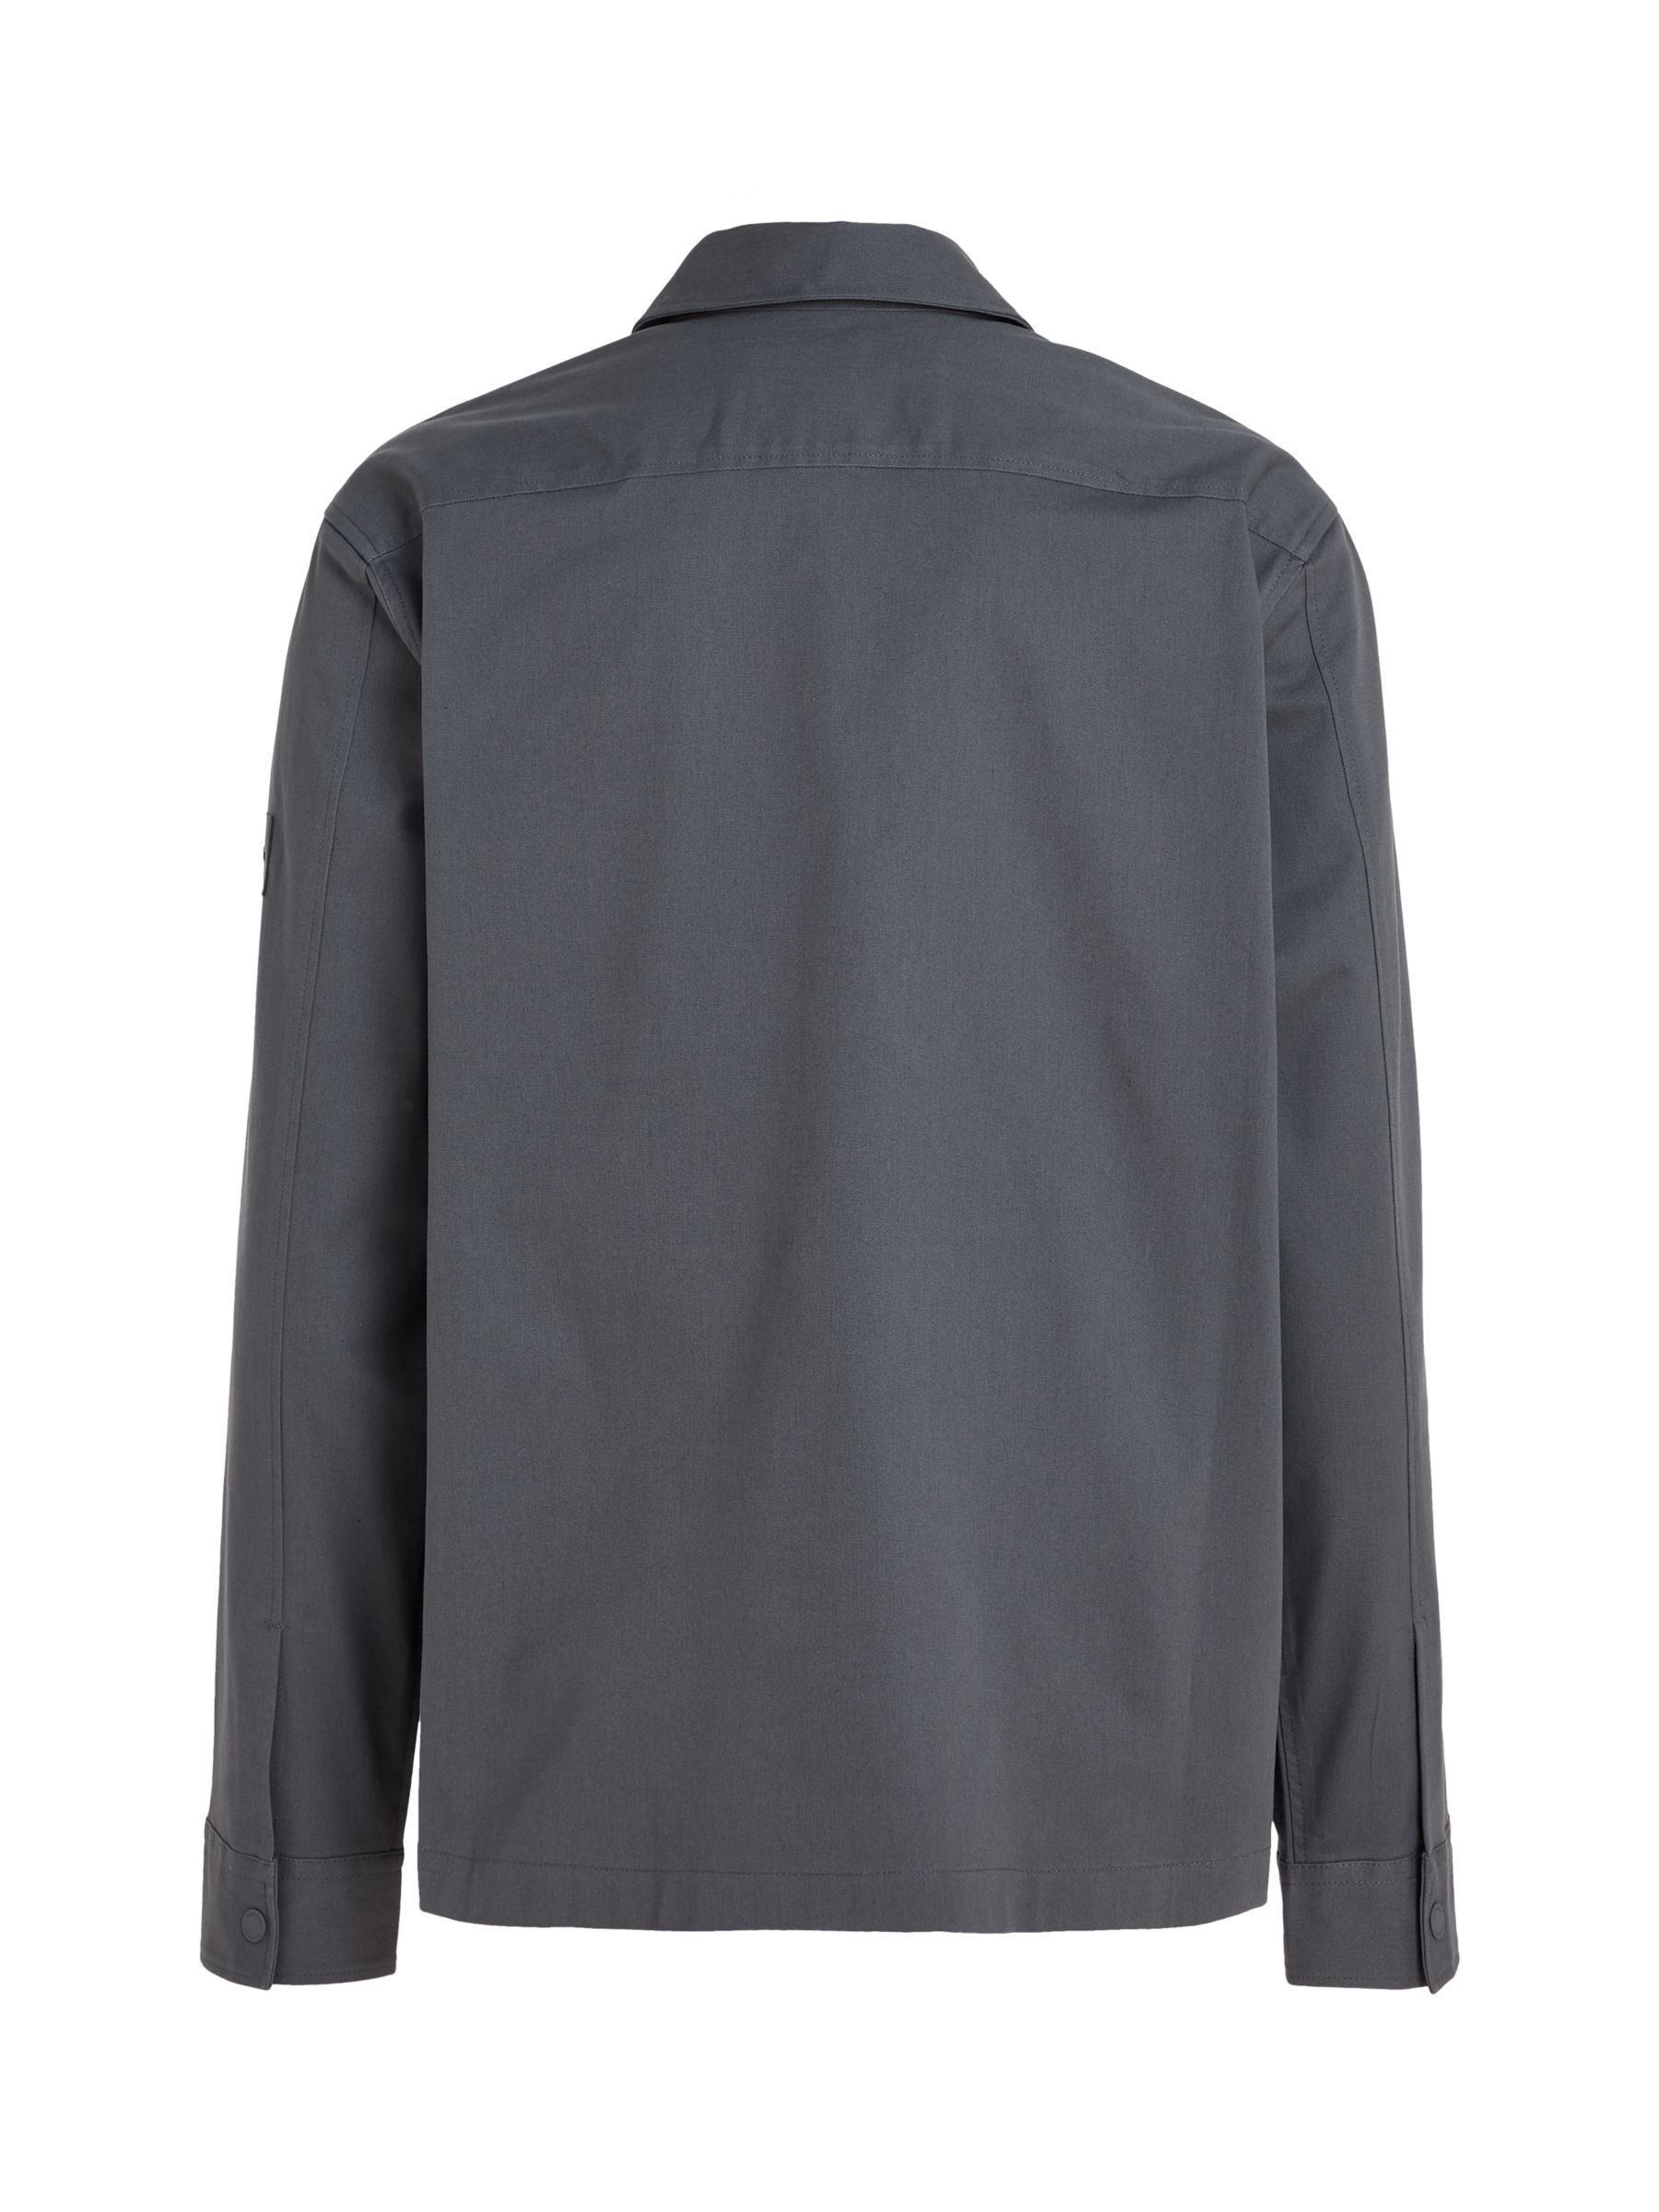 Calvin Klein Modern Twill Overshirt, Grey, L